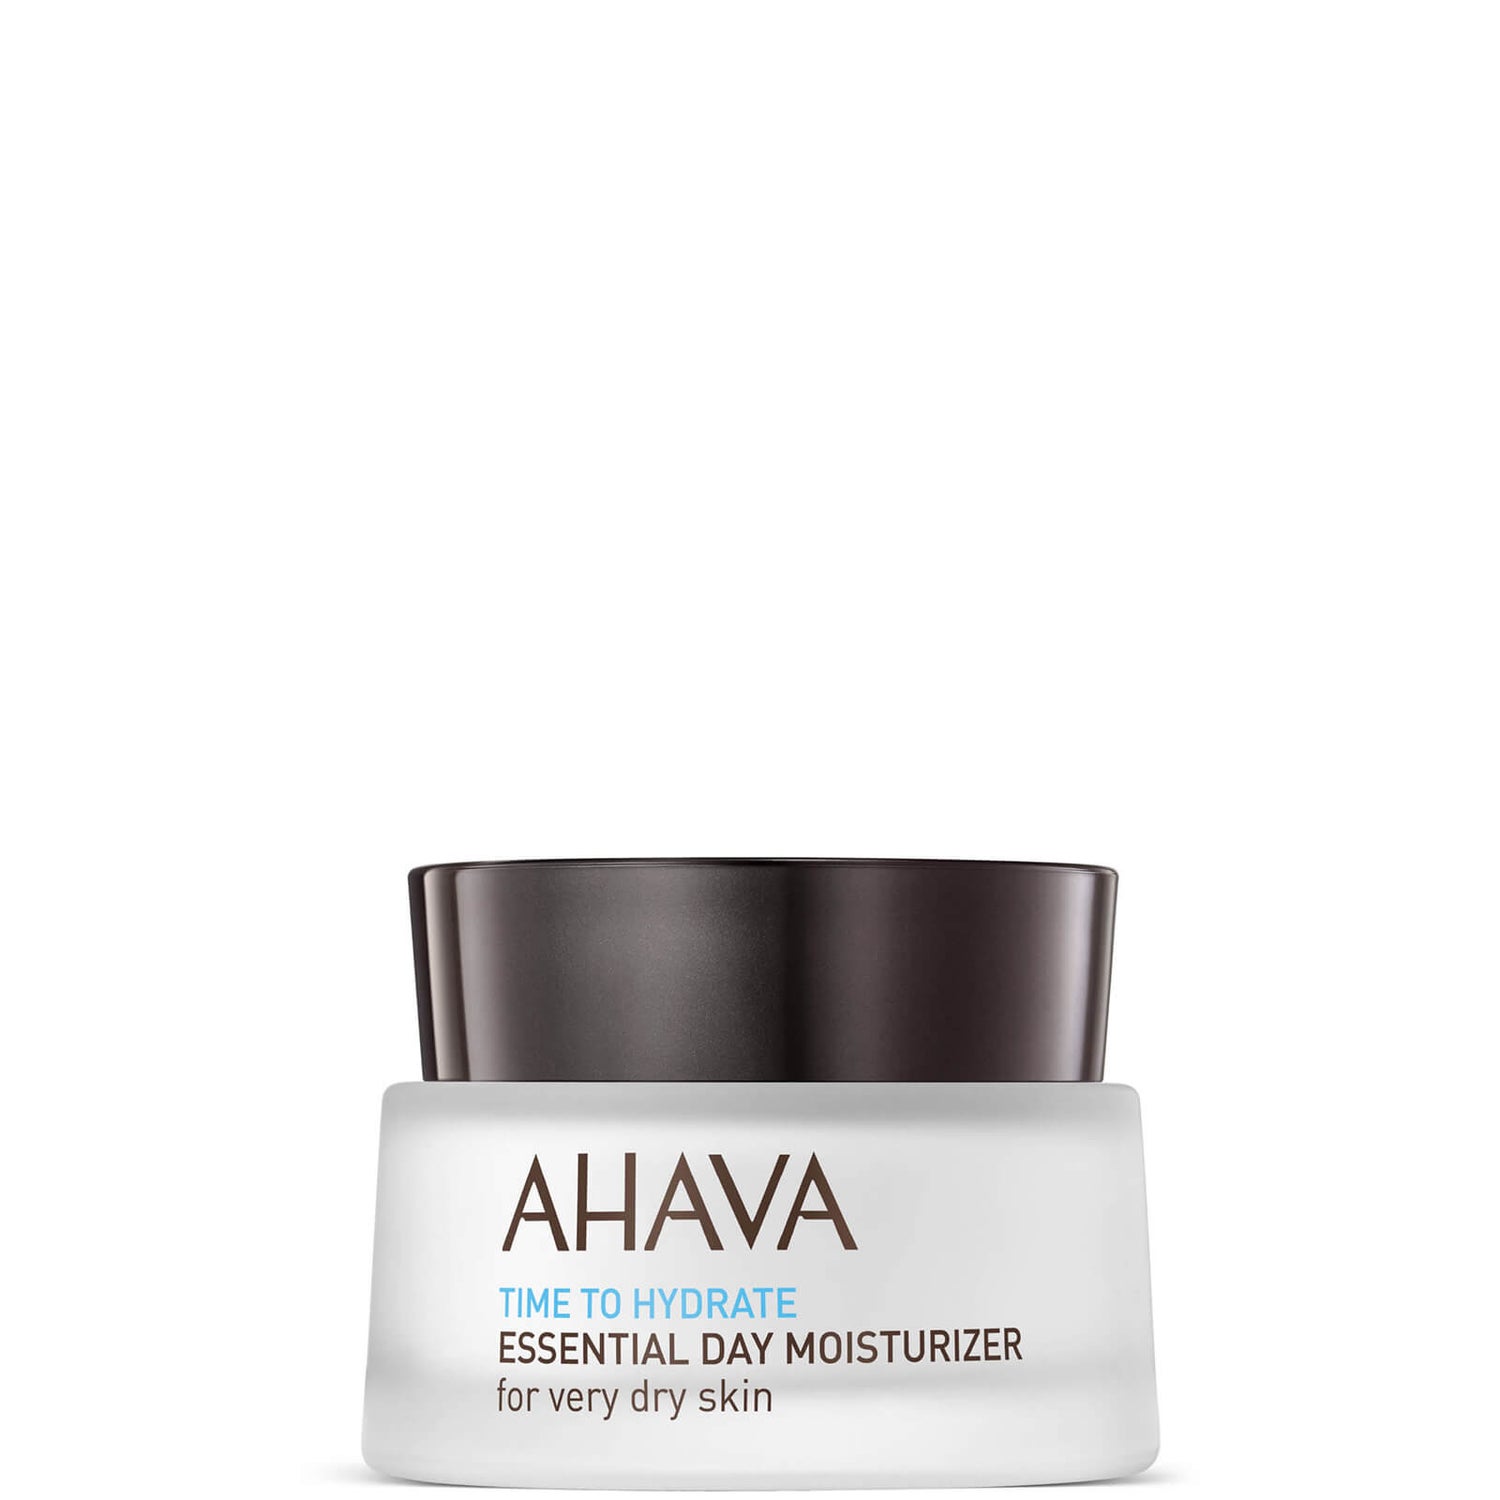 AHAVA 每日基础保湿霜 50ml | 适用于极干燥肌肤